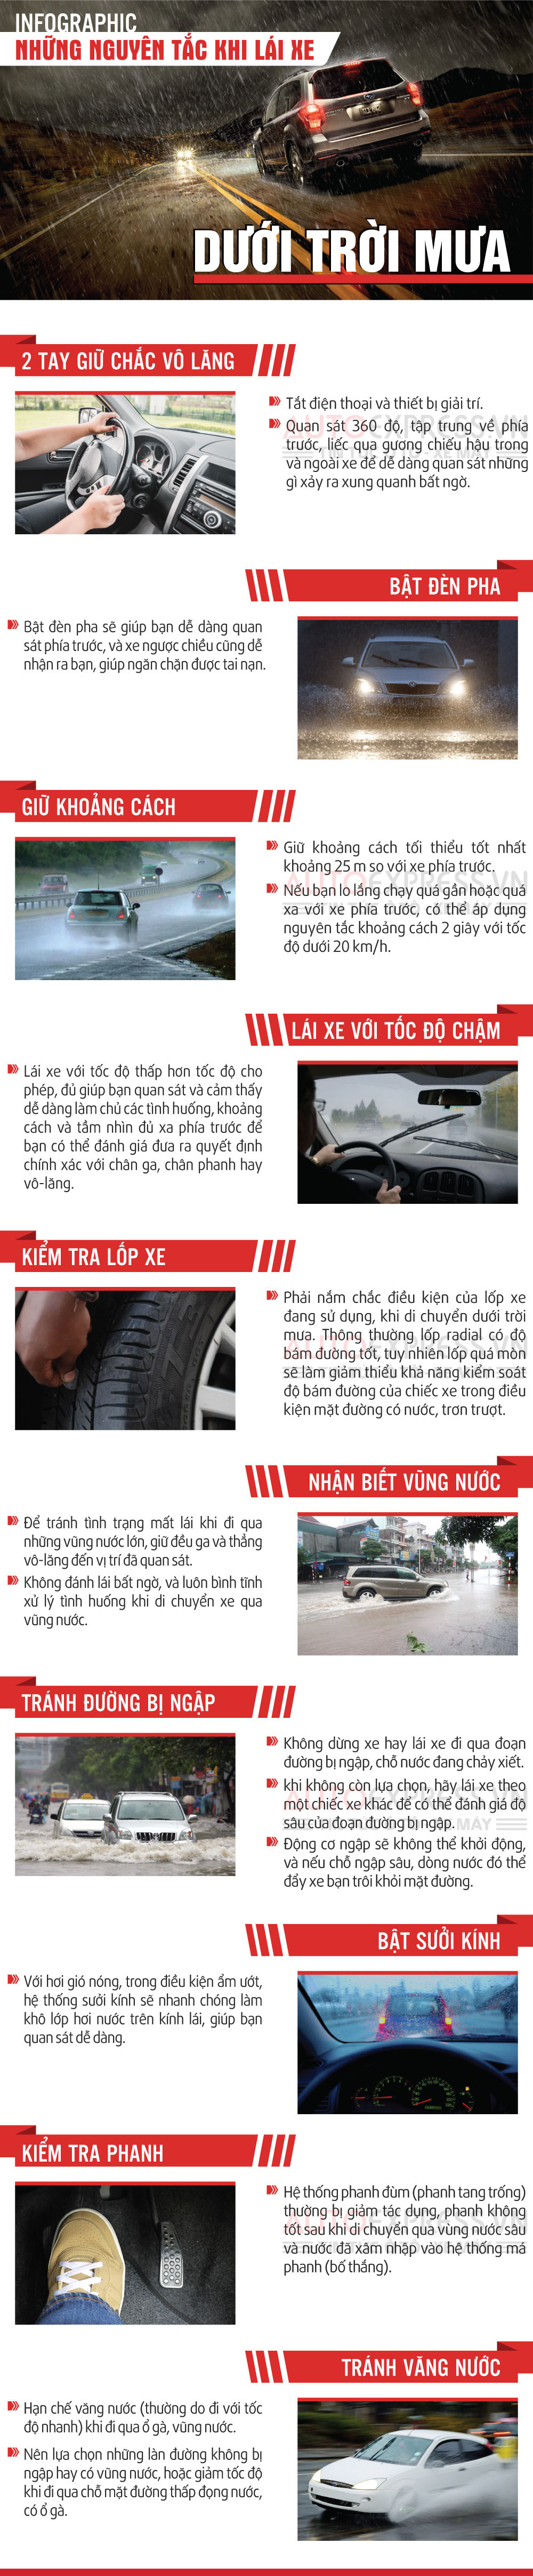 [Infographic] 10 nguyên tắc lái xe dưới trời mưa